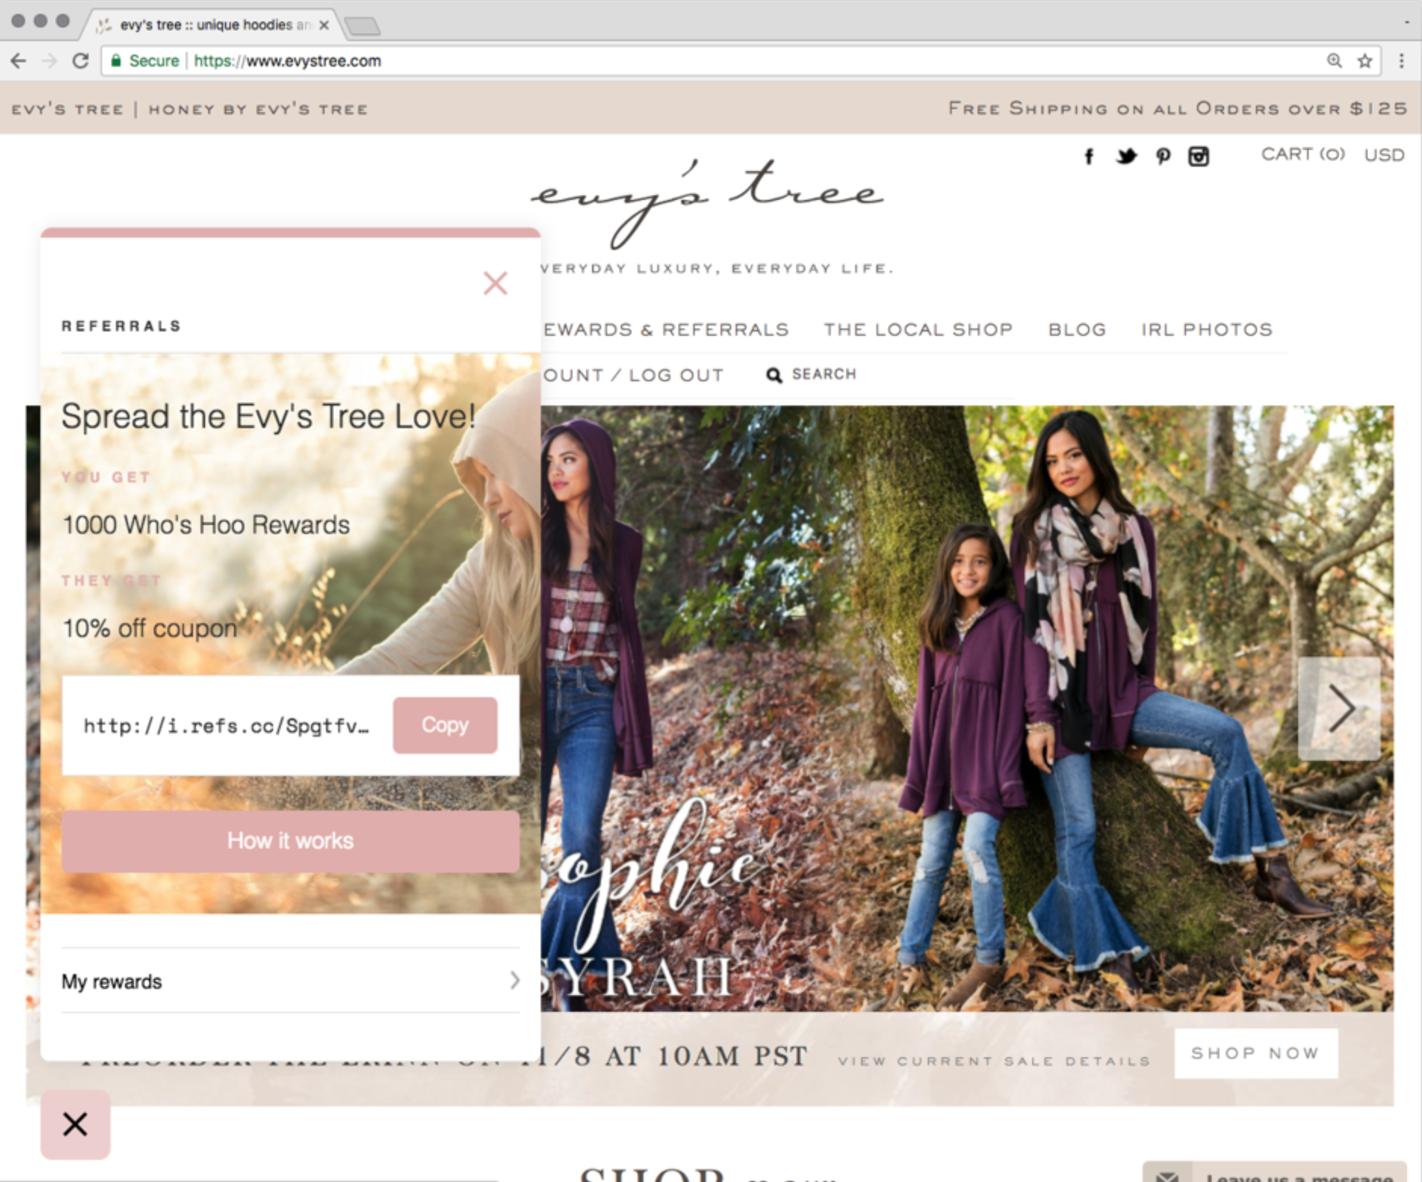 Screenshot showing a website